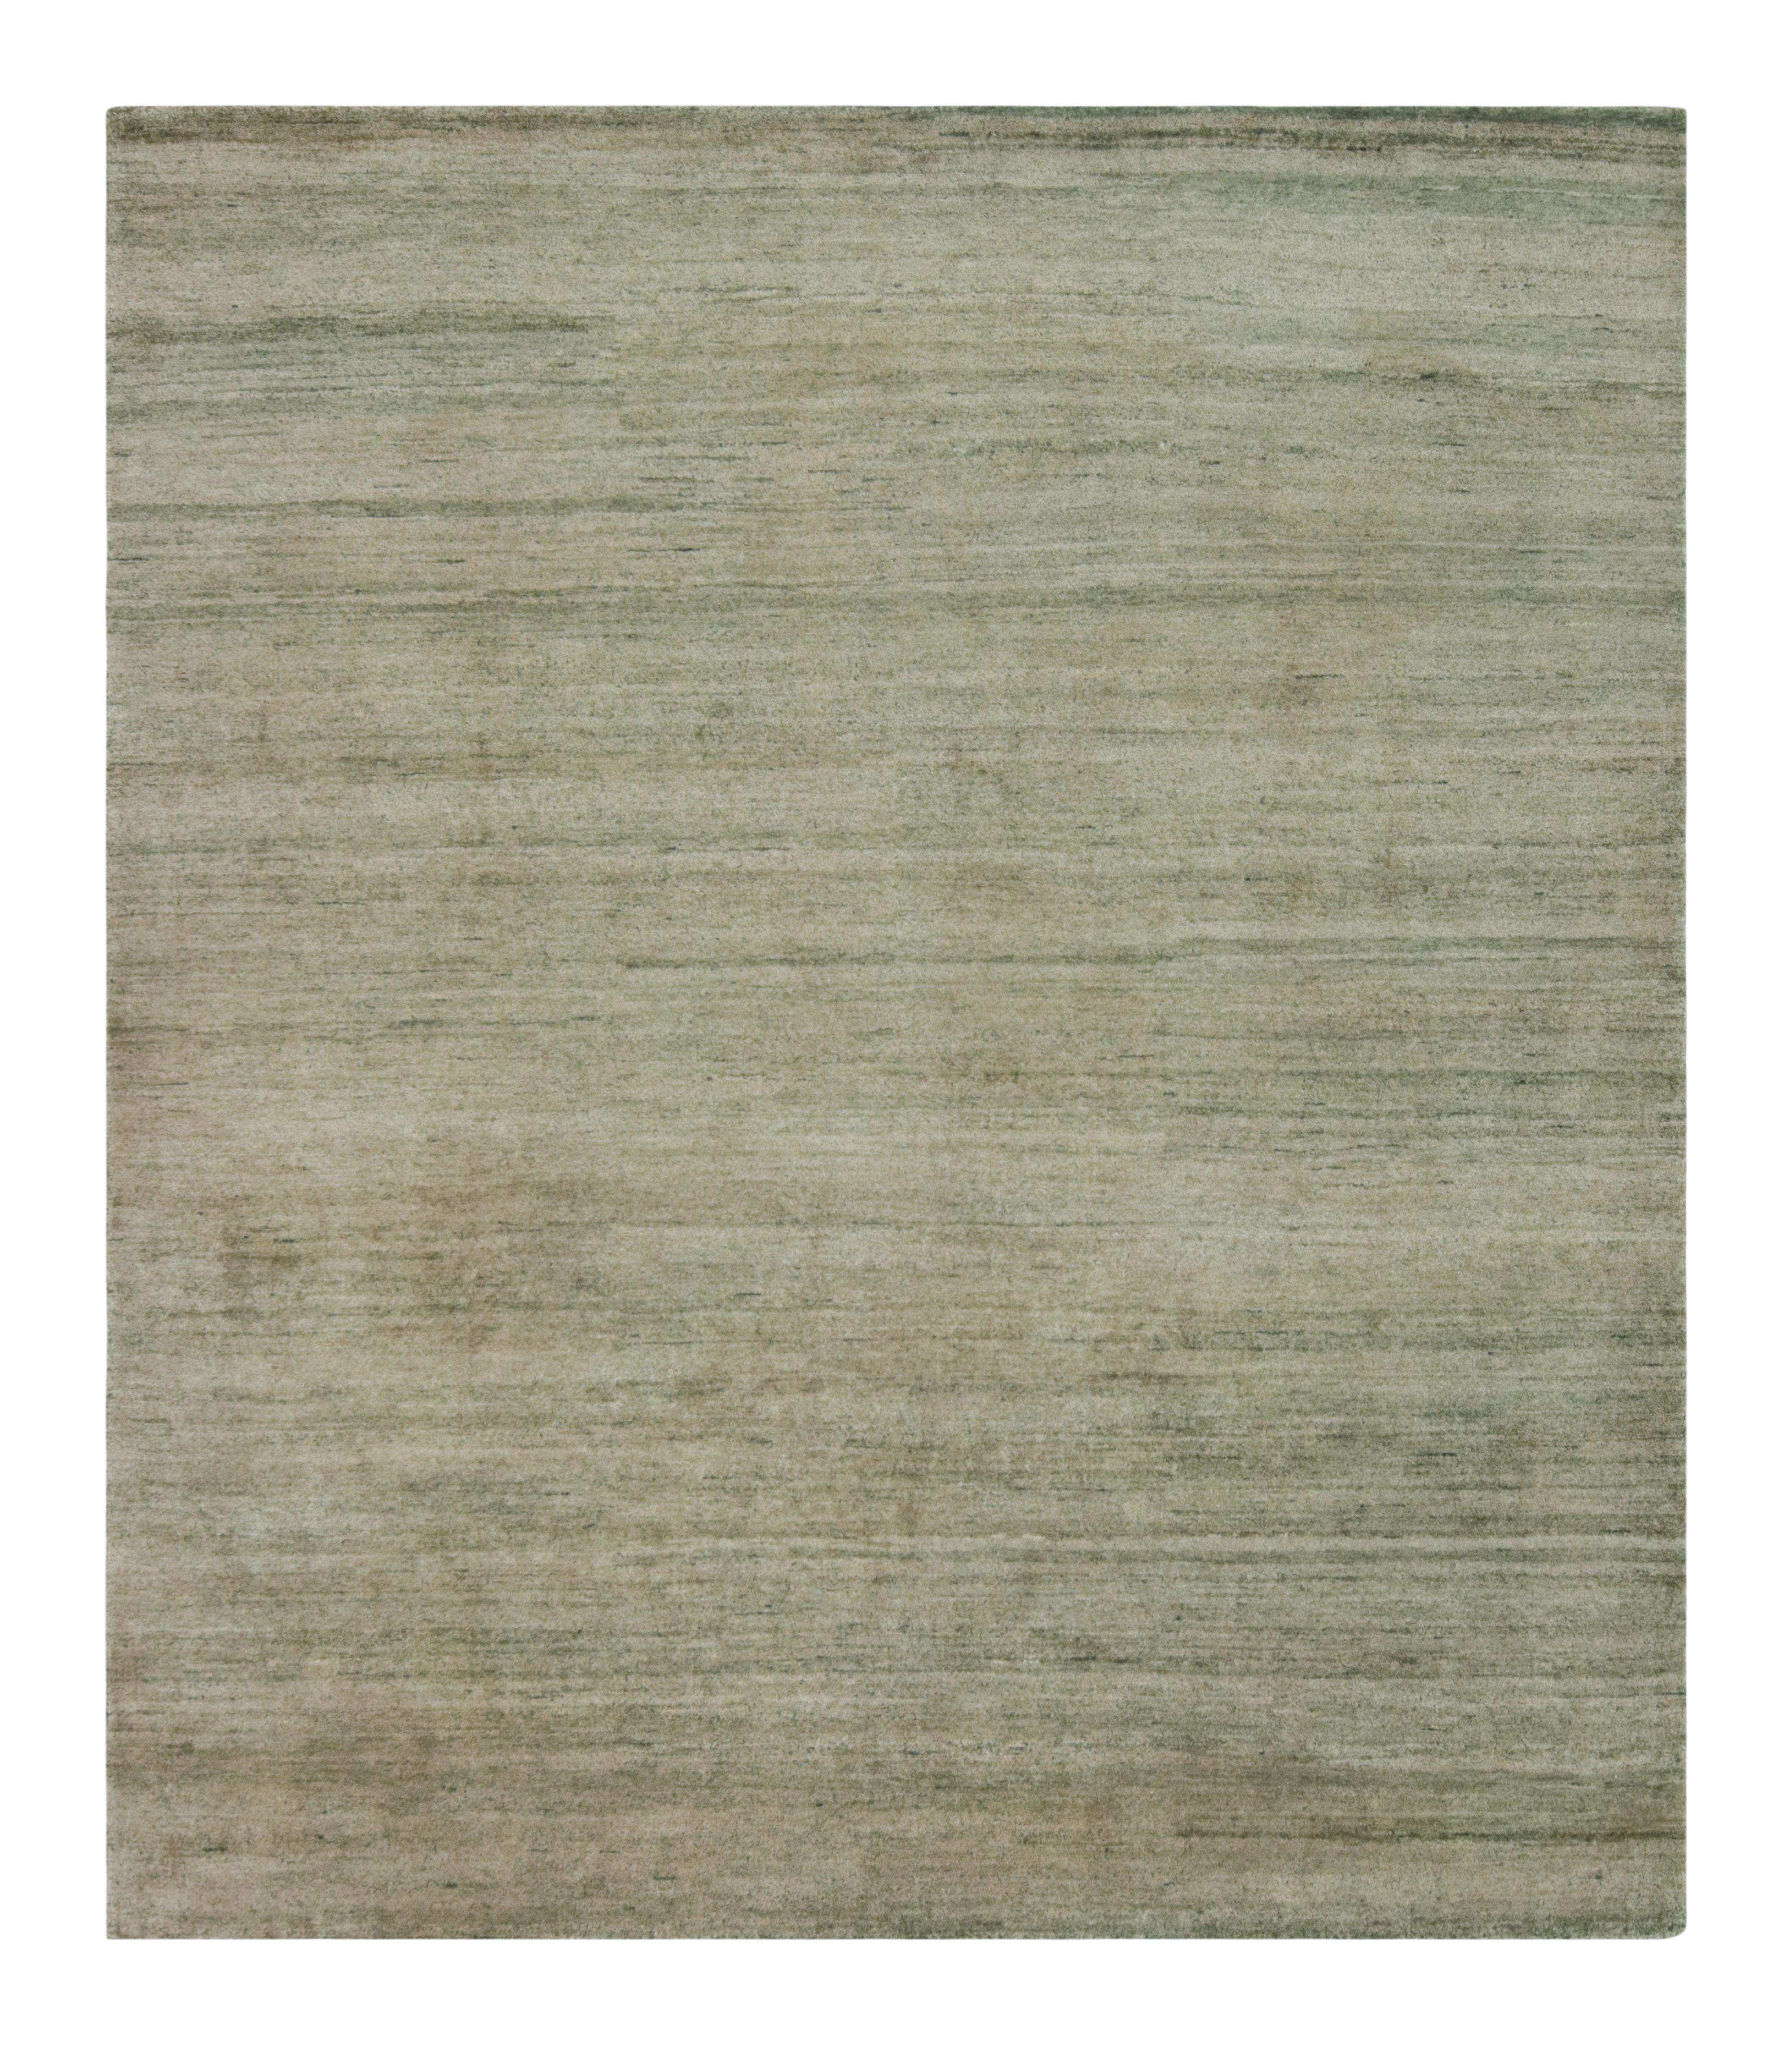 Ce tapis texturé 8x9 est un nouvel ajout à la collection Texture of Color de Rug & Kilim, noué à la main dans une luxueuse soie entièrement naturelle. 

Sur le Design :

Ce tapis reflète notre innovation en matière de styles de tapis unis et de